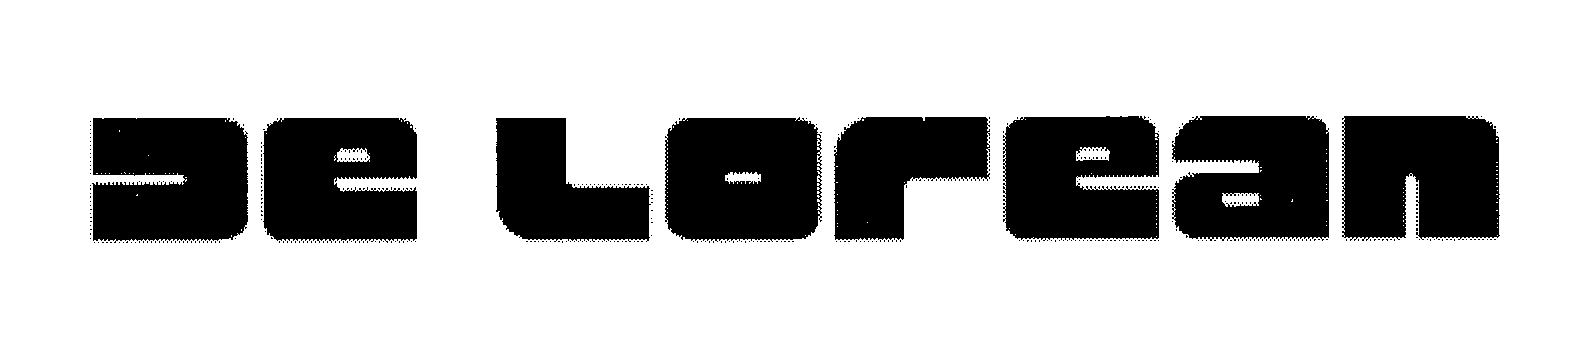 Trademark Logo DE LOREAN